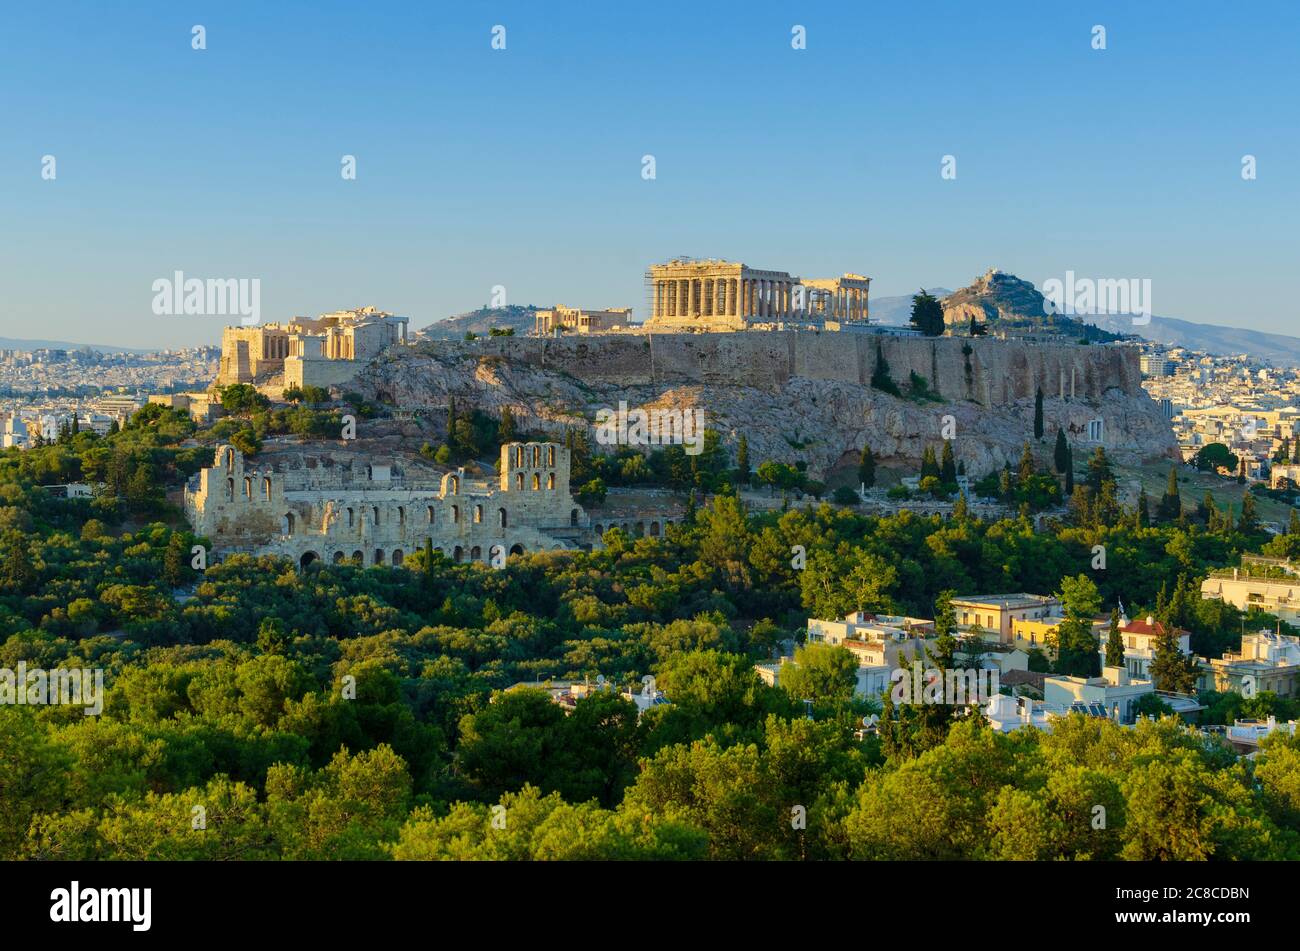 Vista general del Partenón y la antigua Acrópolis de Atenas Grecia con el Odeón de Herodes el Atticus en primer plano - Foto: Geopix Foto de stock